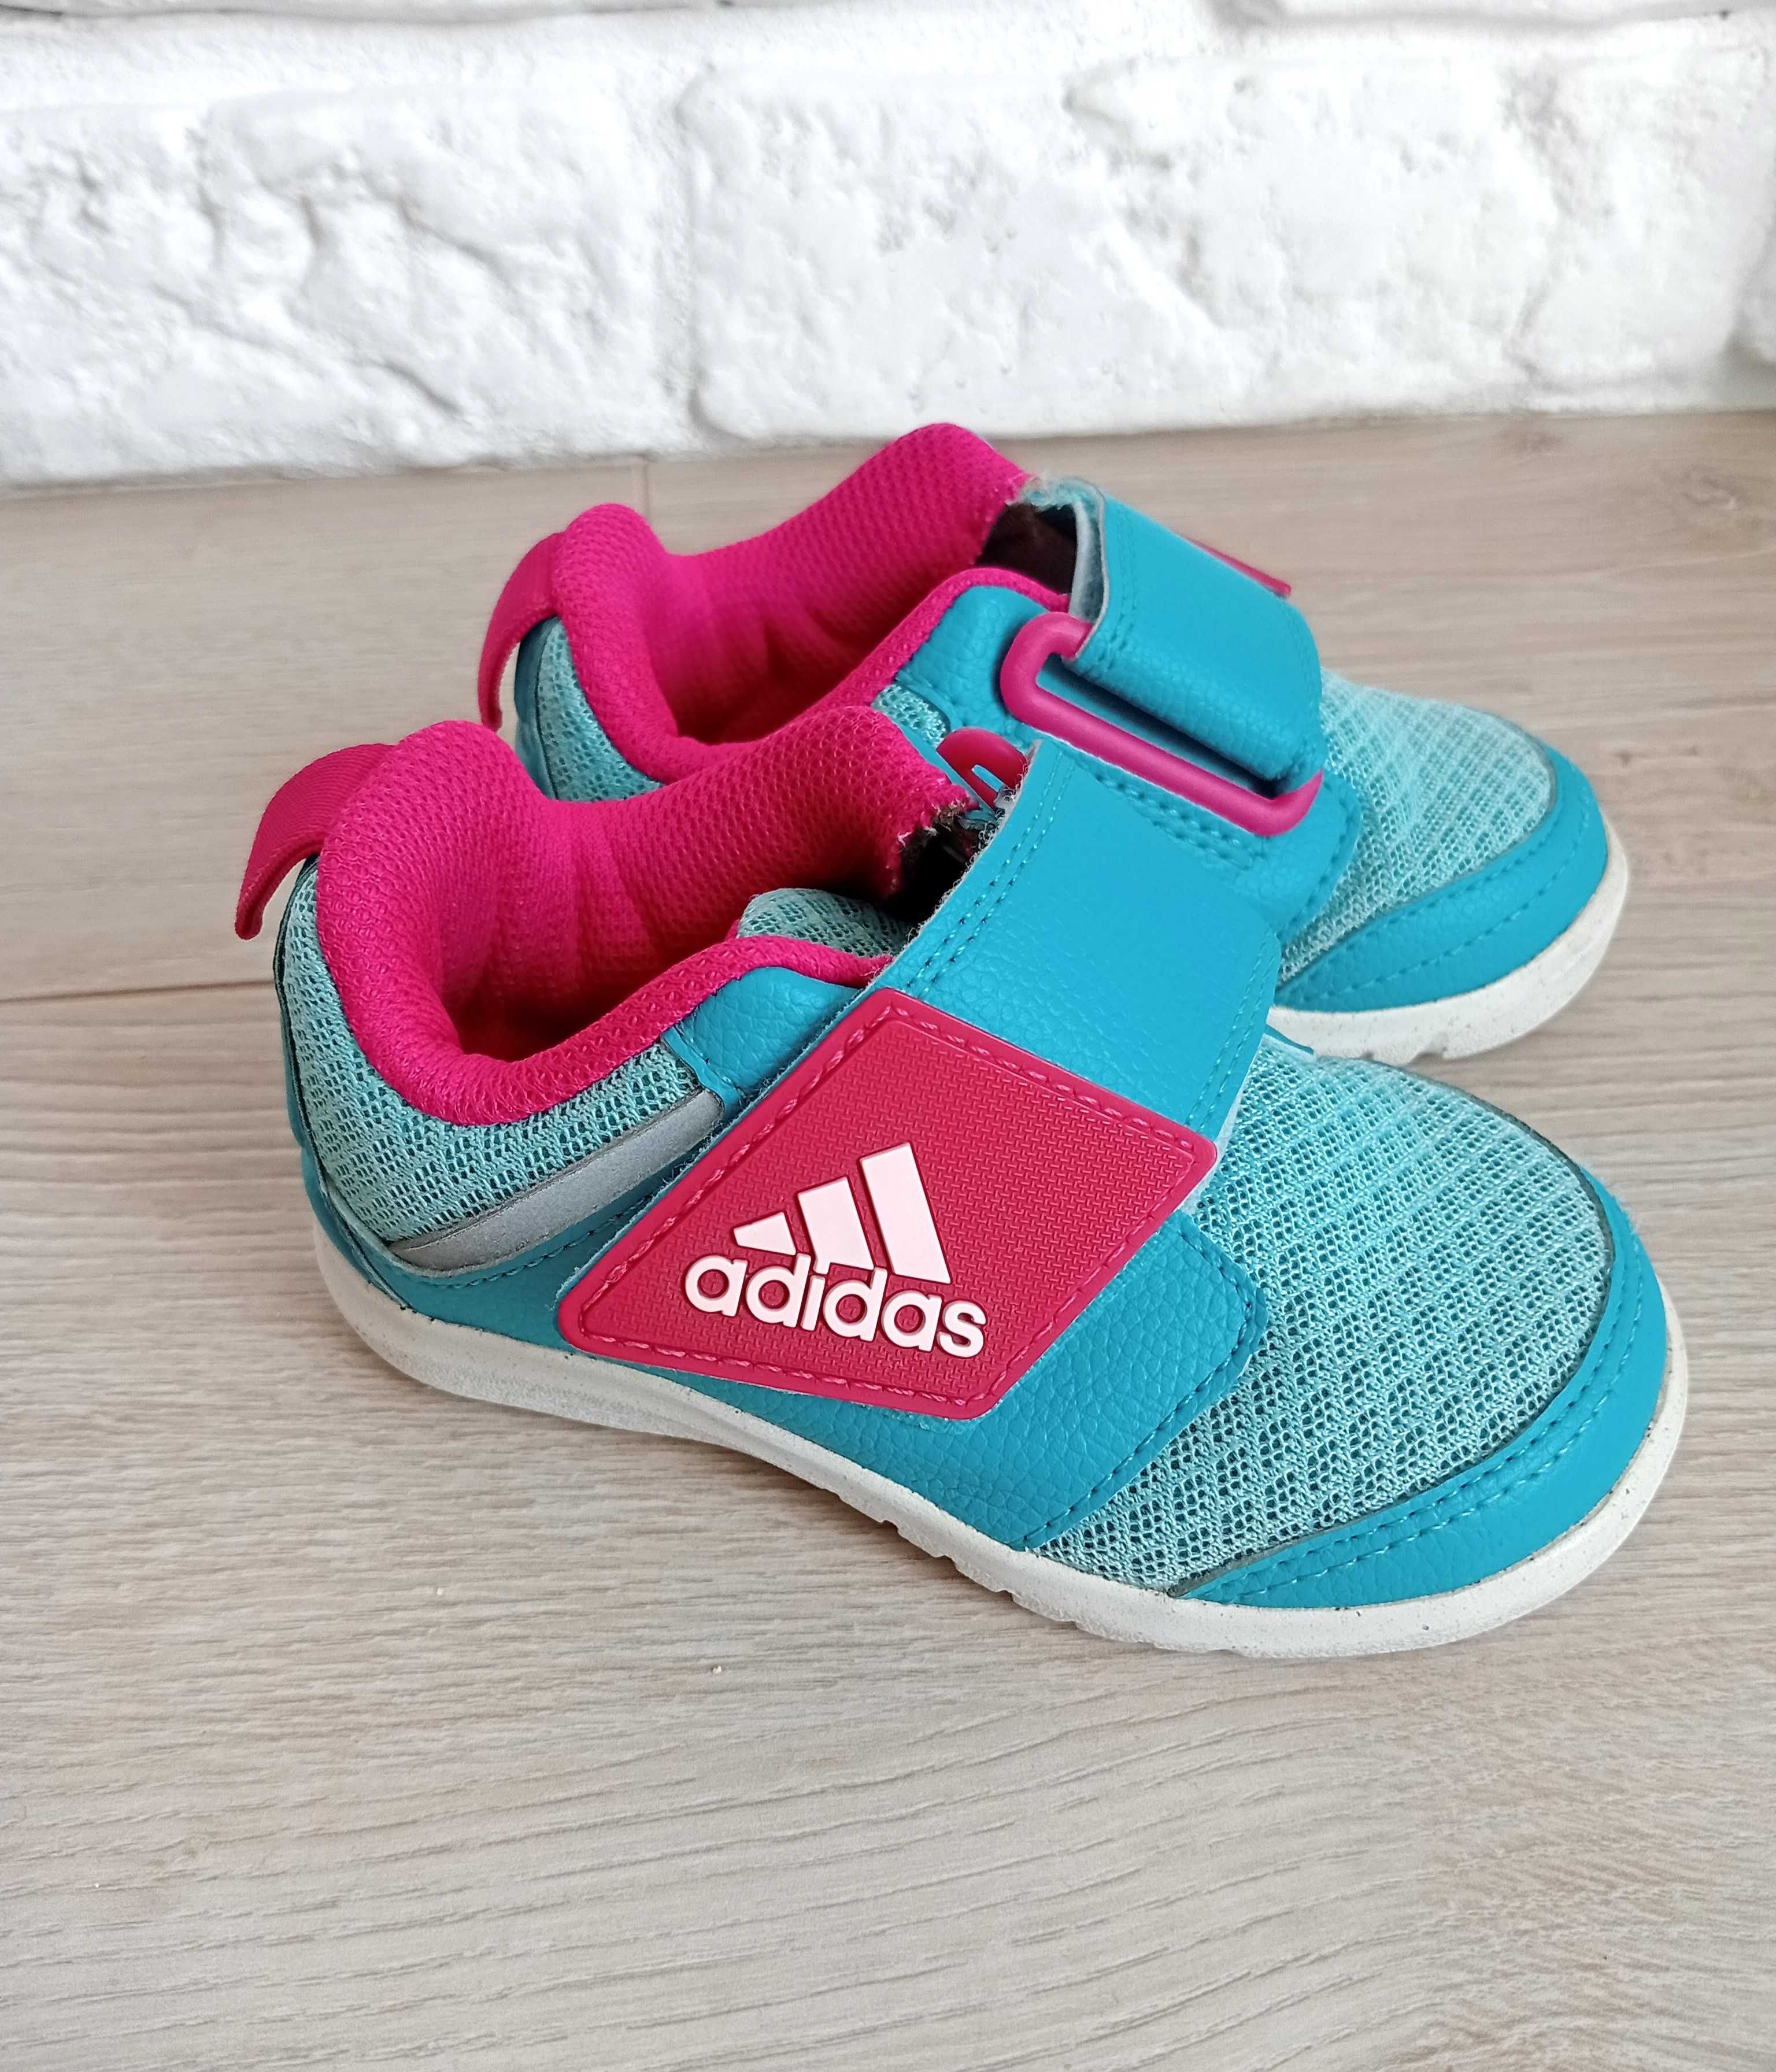 Adidas buciki sportowe dla dziewczynki na rzep roz.20 roż, błękit